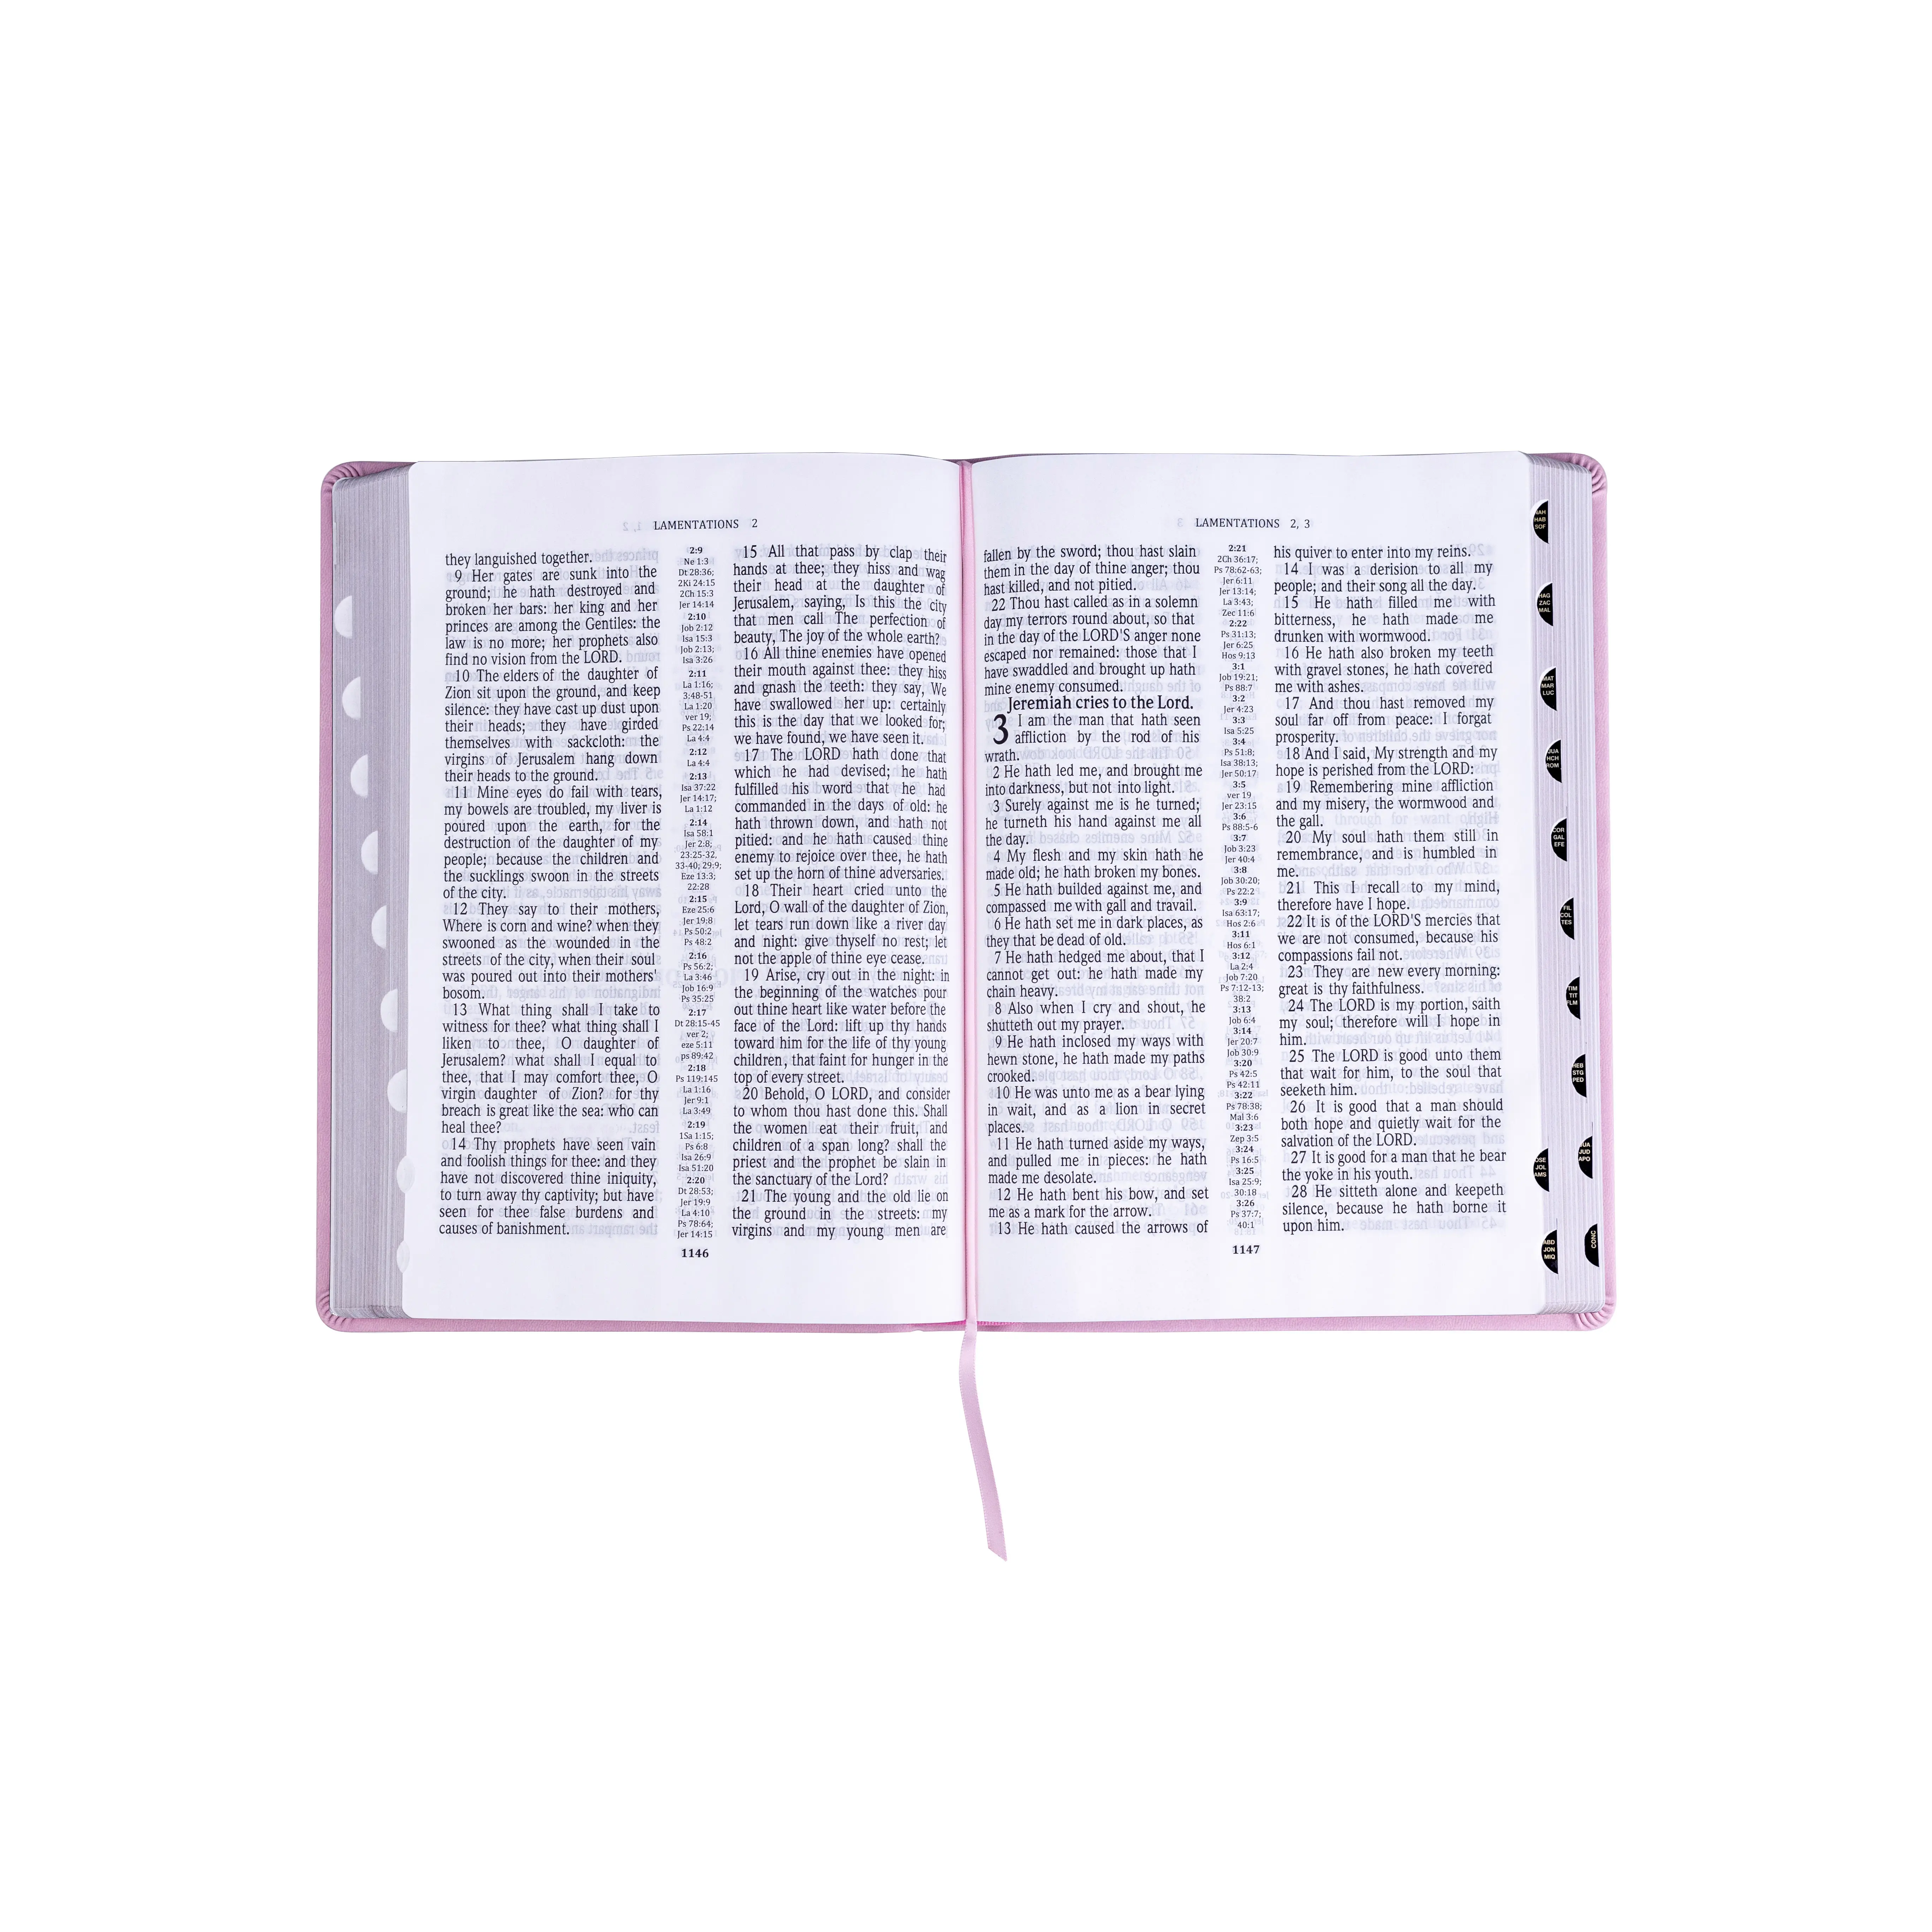 حار بيع السلس الطباعة الكتاب المقدس ورقة الإنجليزية الكتاب المقدس الملك جيمس النسخة الإنجيل الطباعة